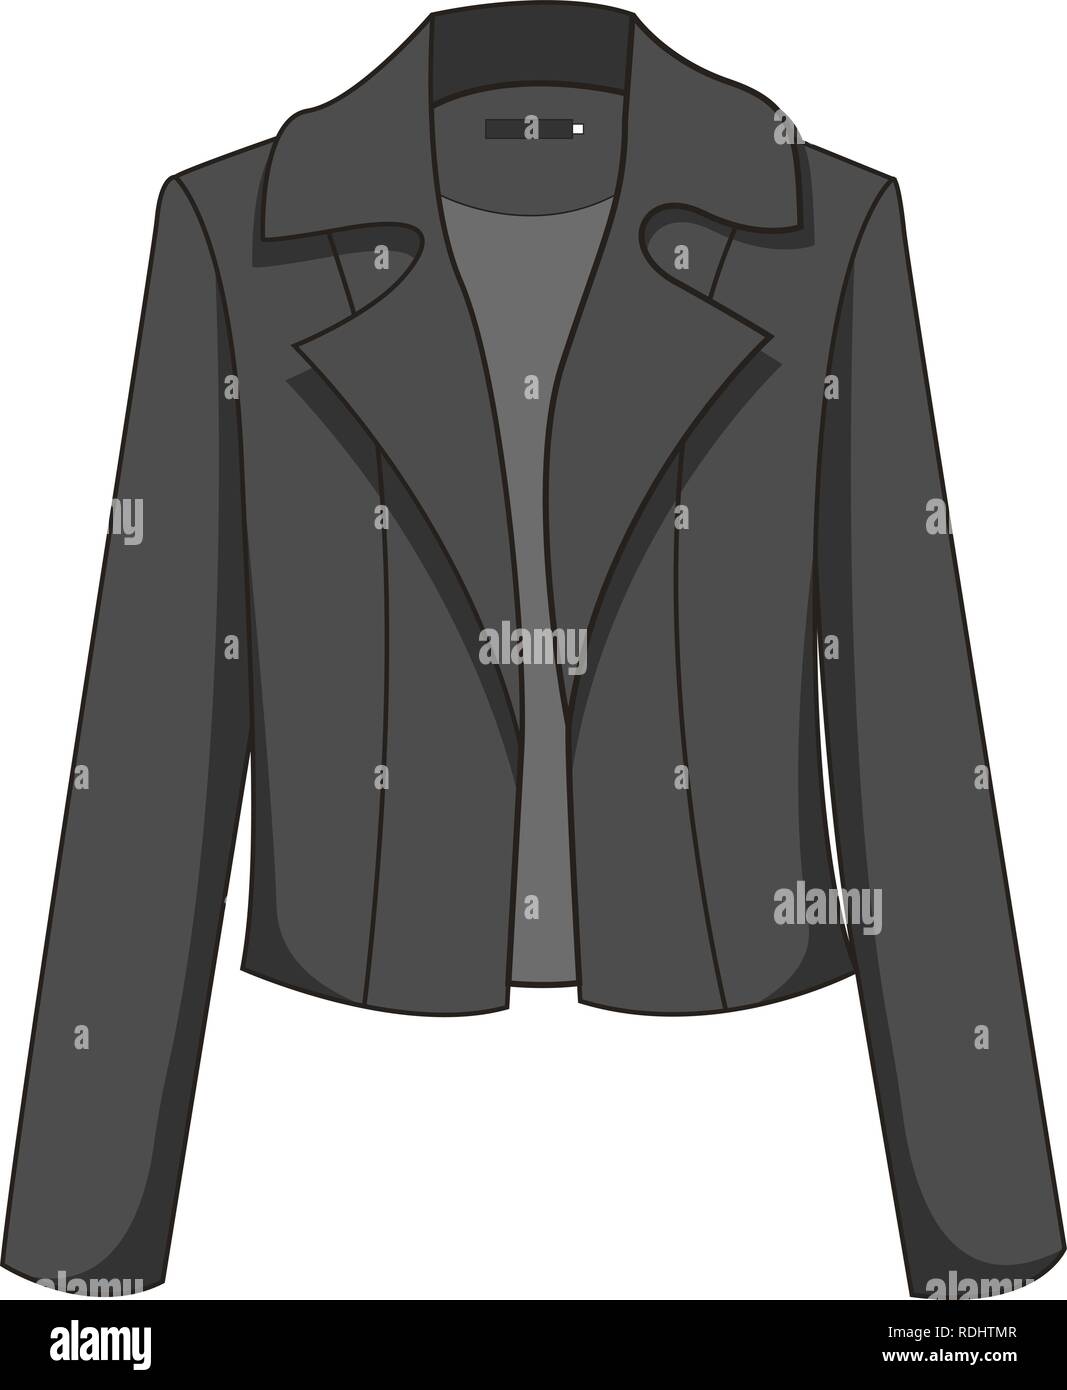 Elegante e classico nero/grigio scuro/blazer giacca. Isolato su sfondo bianco. Indossare in ufficio, moderna moda casual. Illustrazione vettoriale EPS Illustrazione Vettoriale